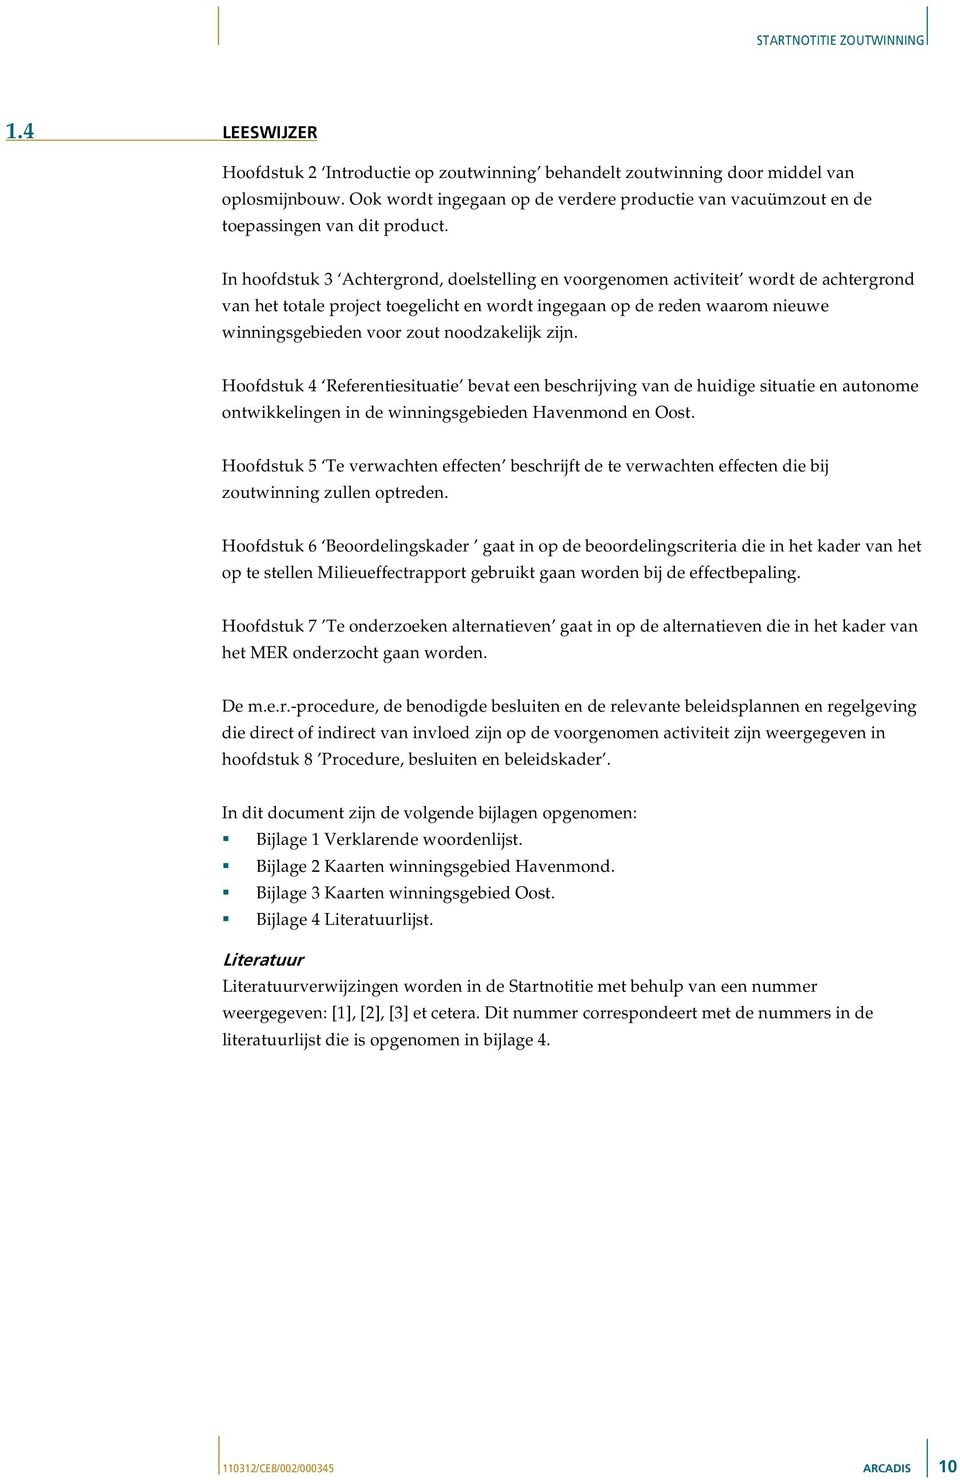 noodzakelijk zijn. Hoofdstuk 4 Referentiesituatie bevat een beschrijving van de huidige situatie en autonome ontwikkelingen in de winningsgebieden Havenmond en Oost.